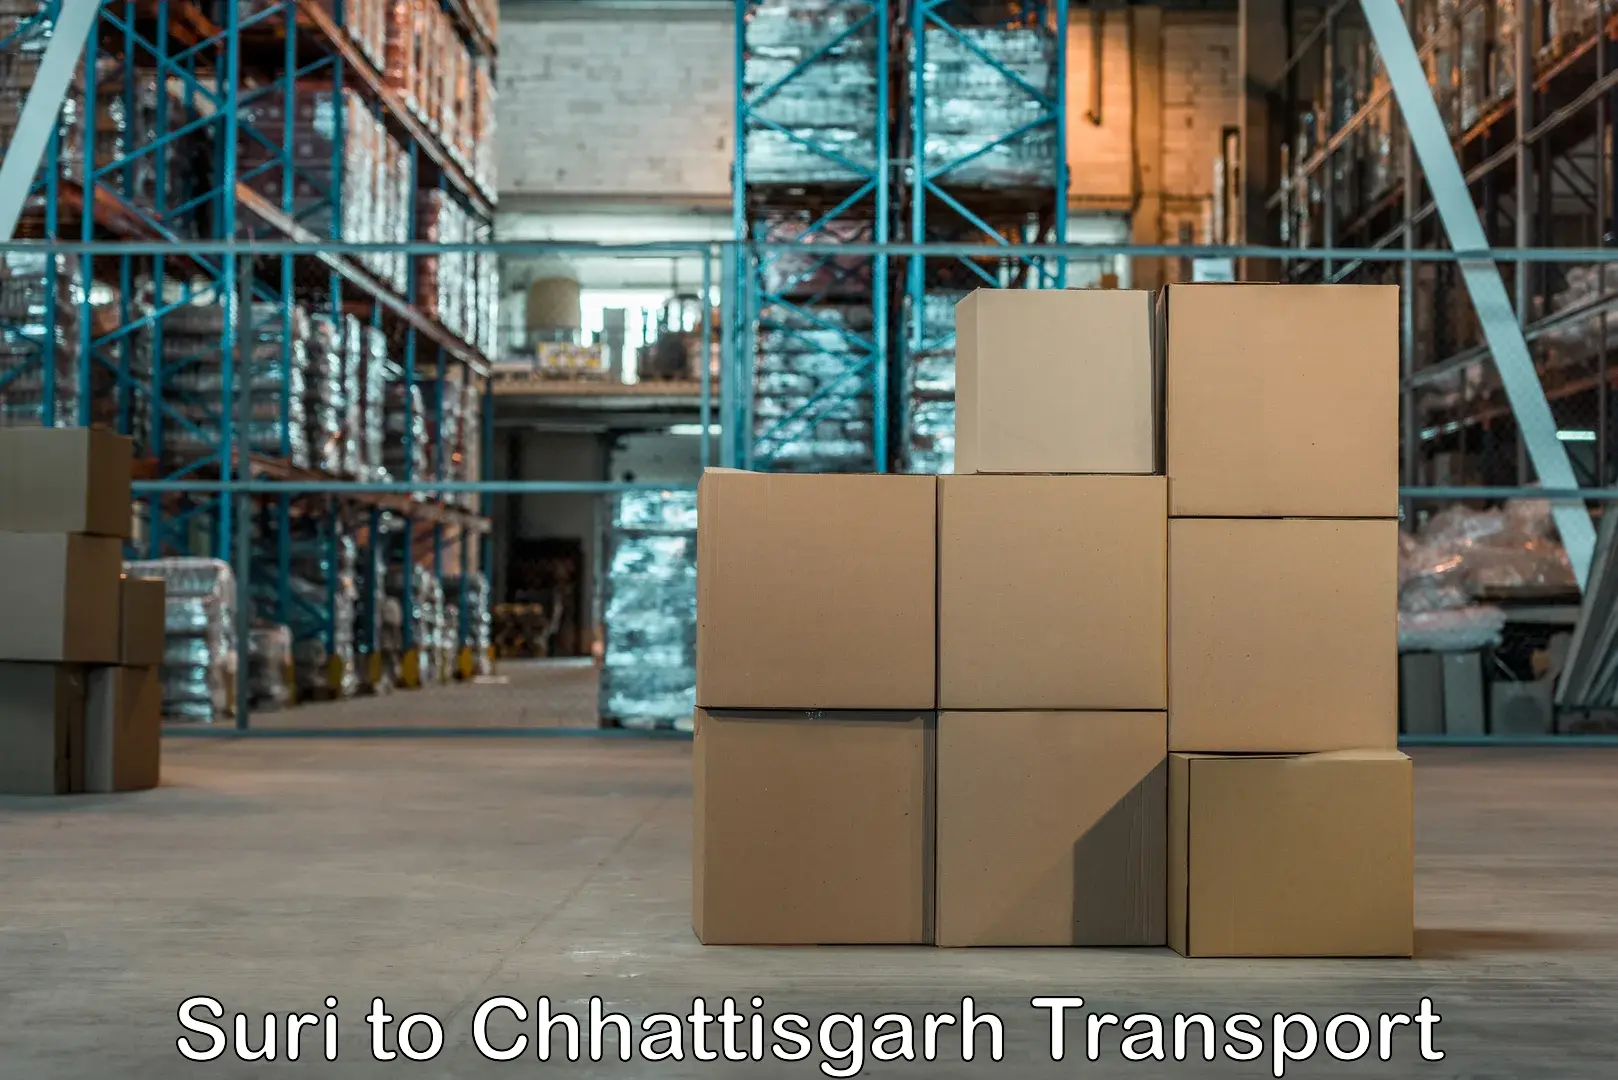 Delivery service Suri to Korea Chhattisgarh